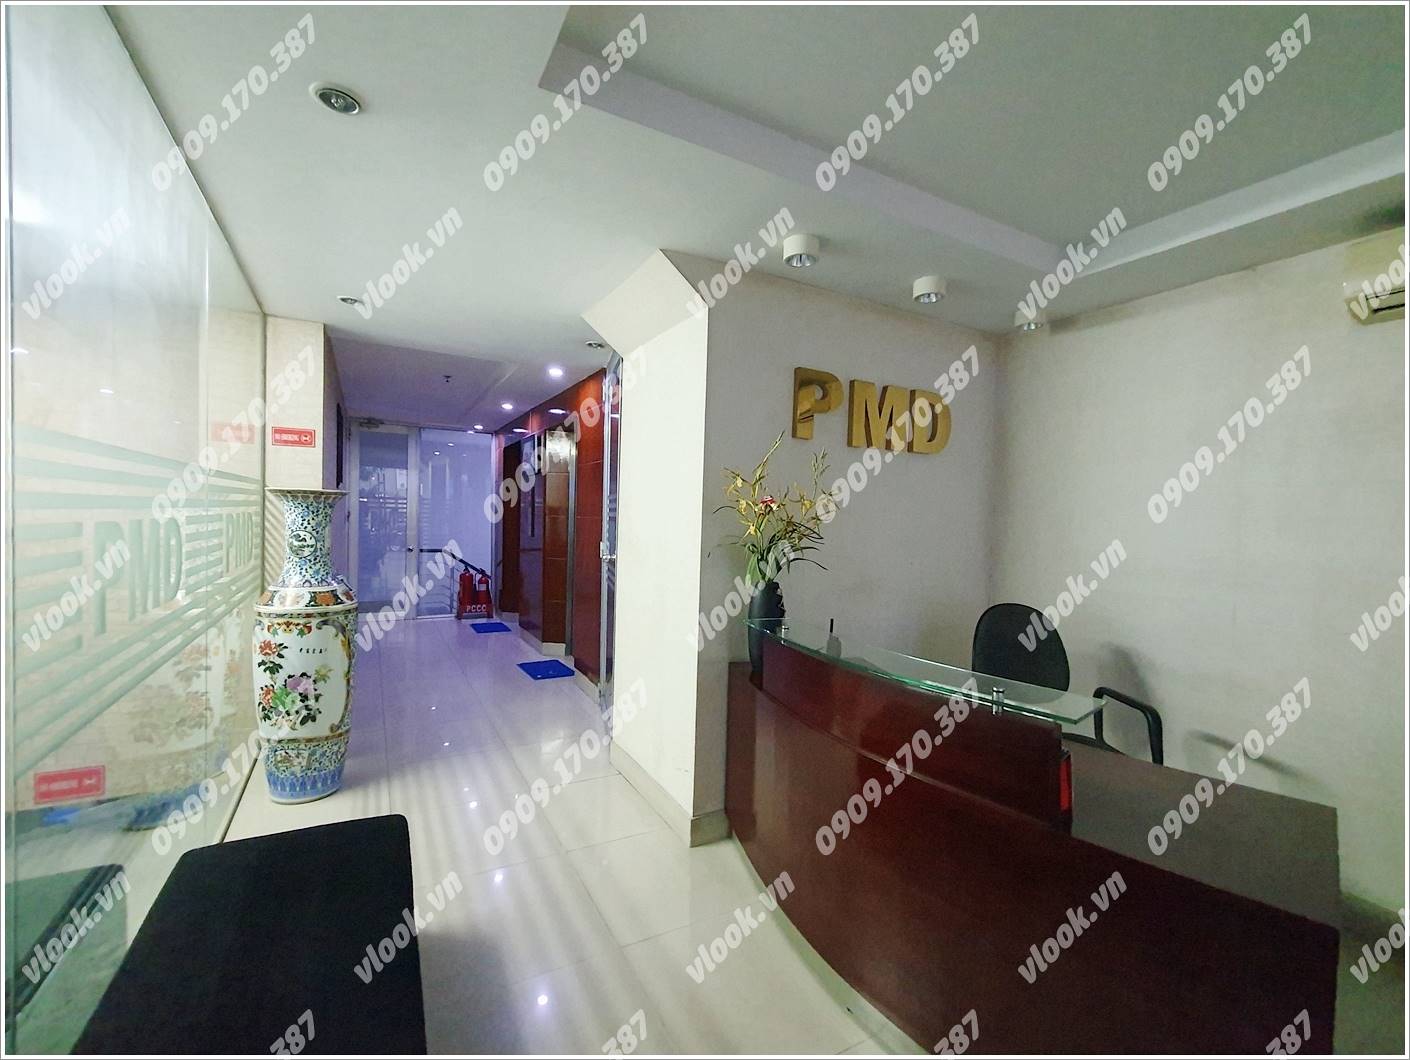 Cao ốc văn phòng cho thuê tòa nhà Phú Mã Dương Building, Hoàng Văn Thái, Quận 7, TP.HCM - vlook.vn